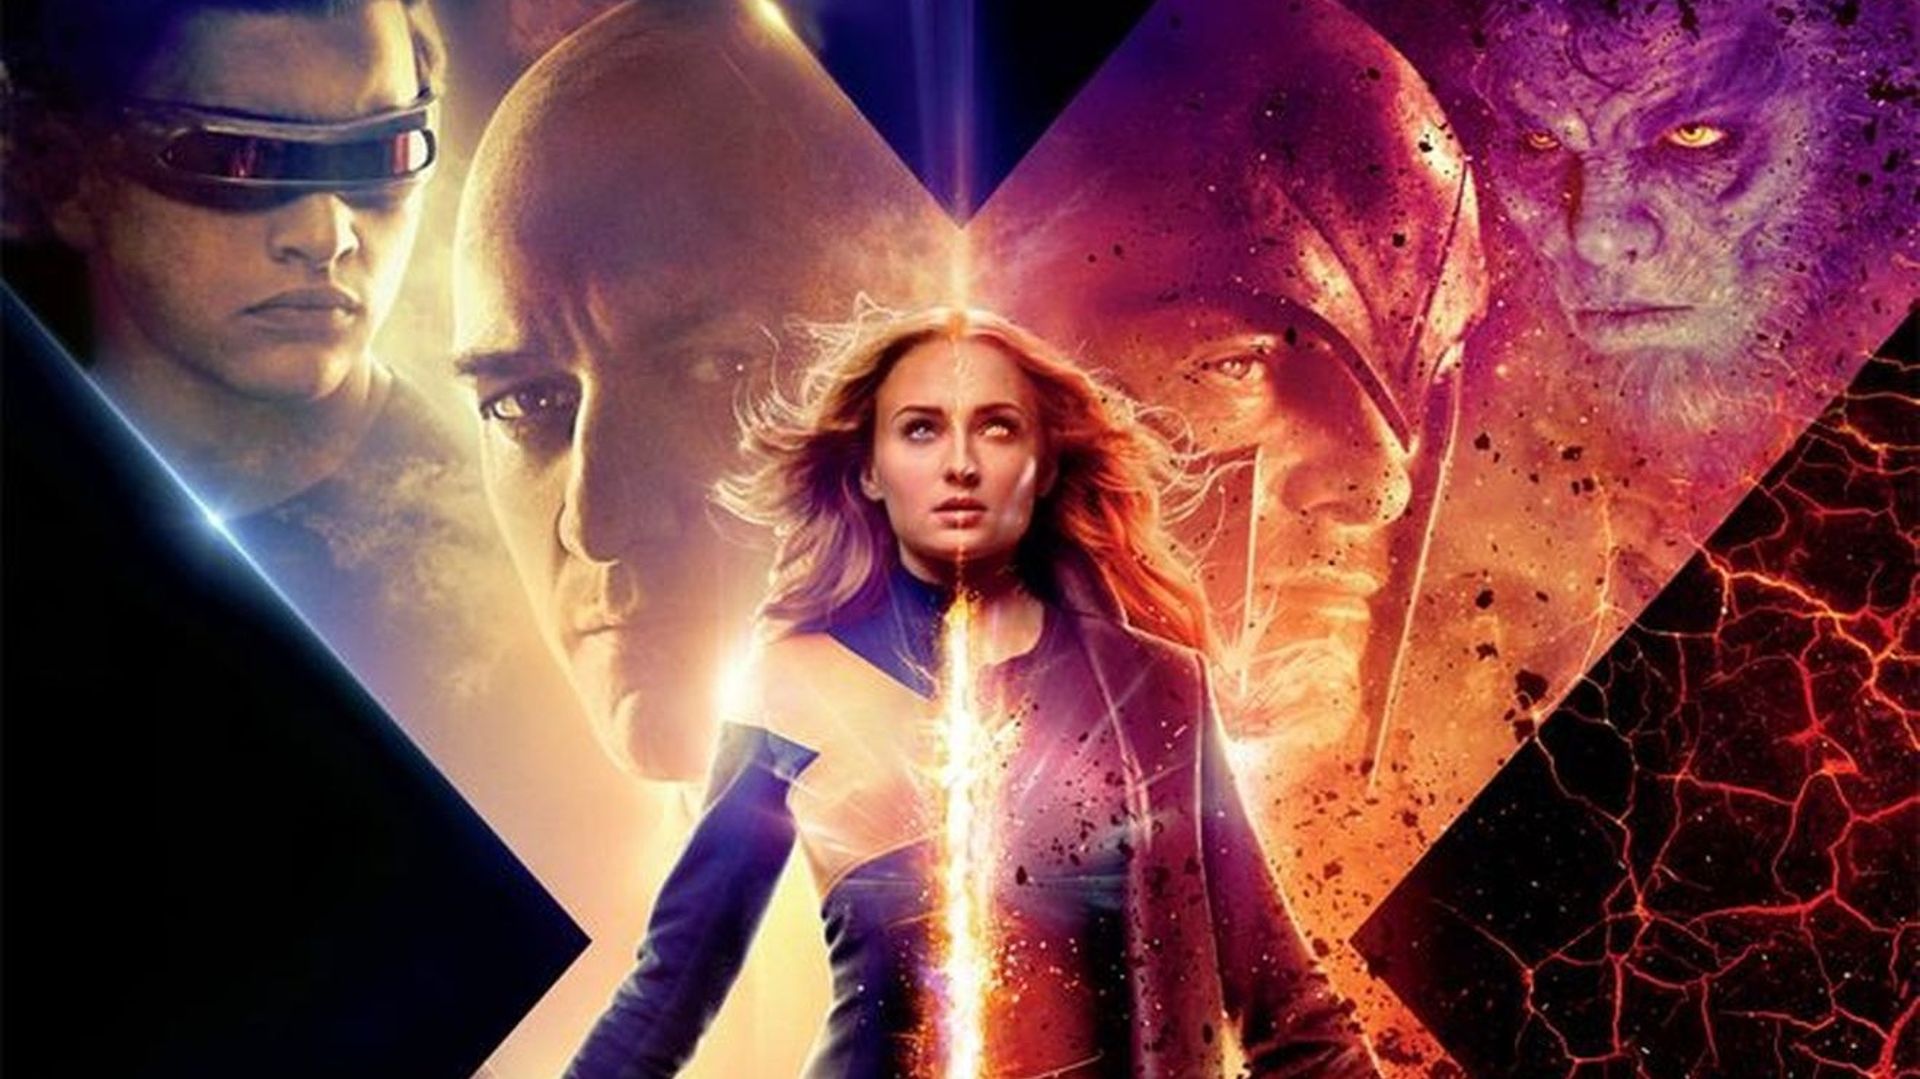 Sophie Turner de "Game of Thrones" sera à l'affiche en juin de "X-Men : Dark Phoenix"